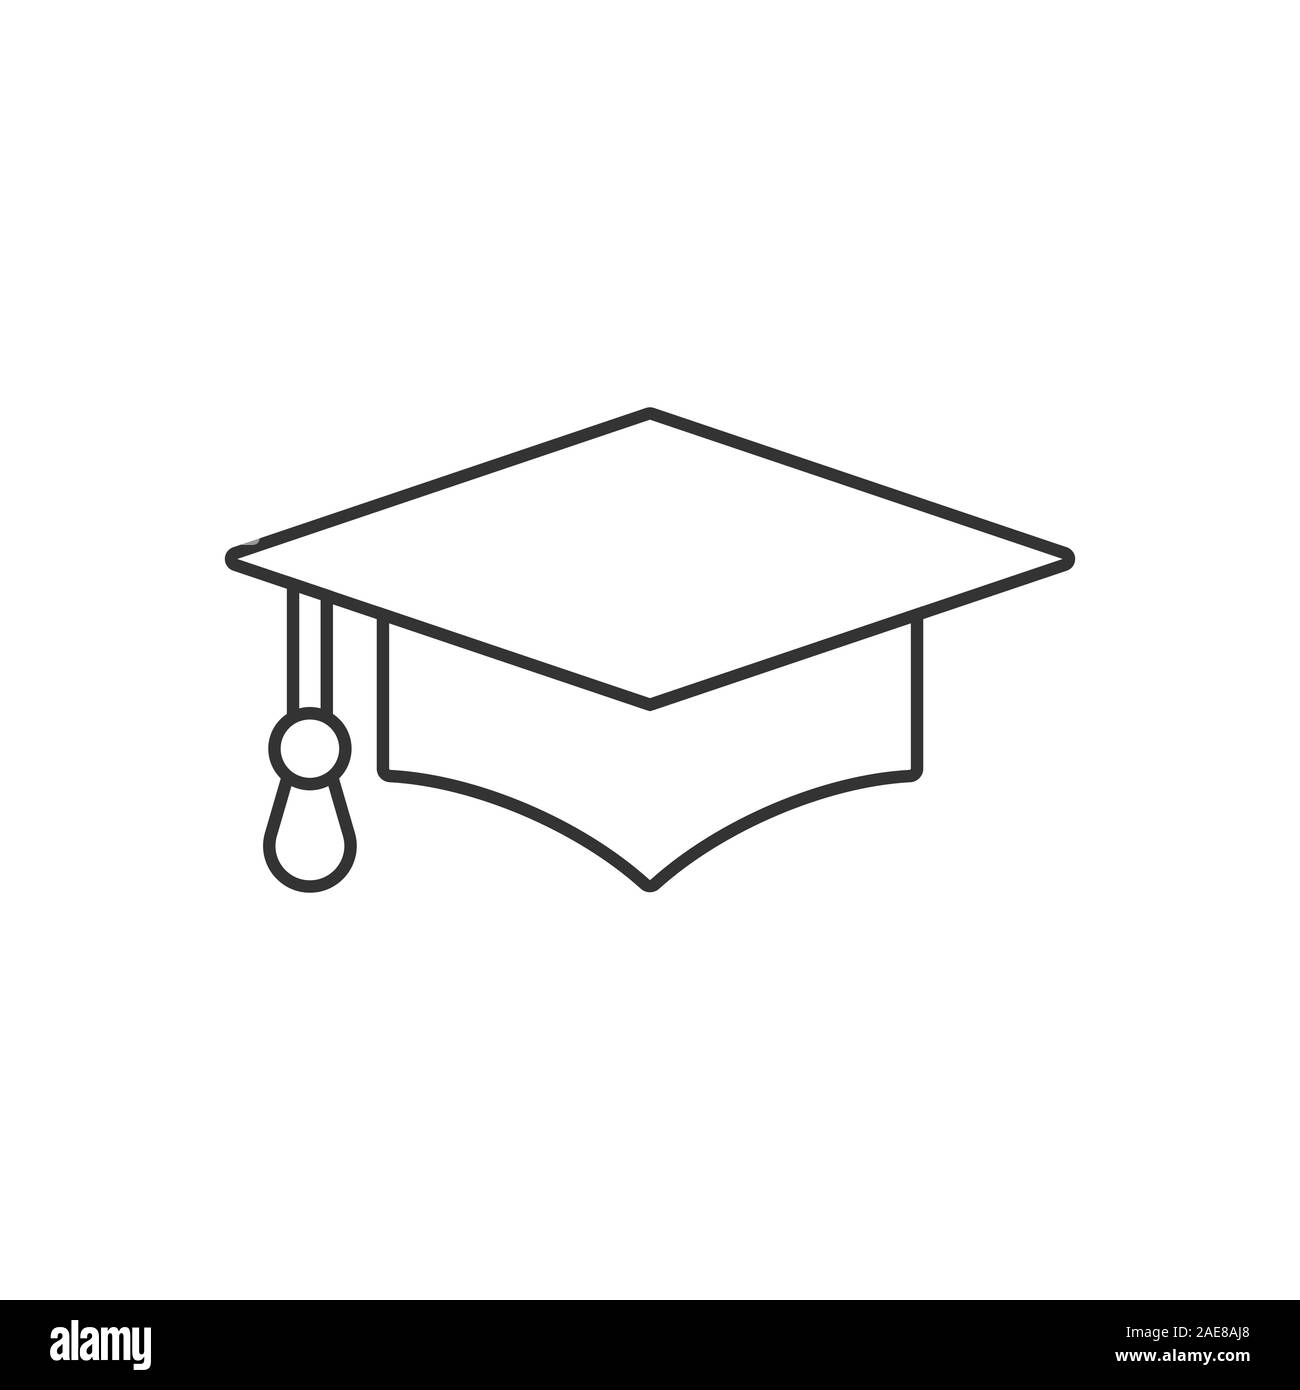 university cap icon